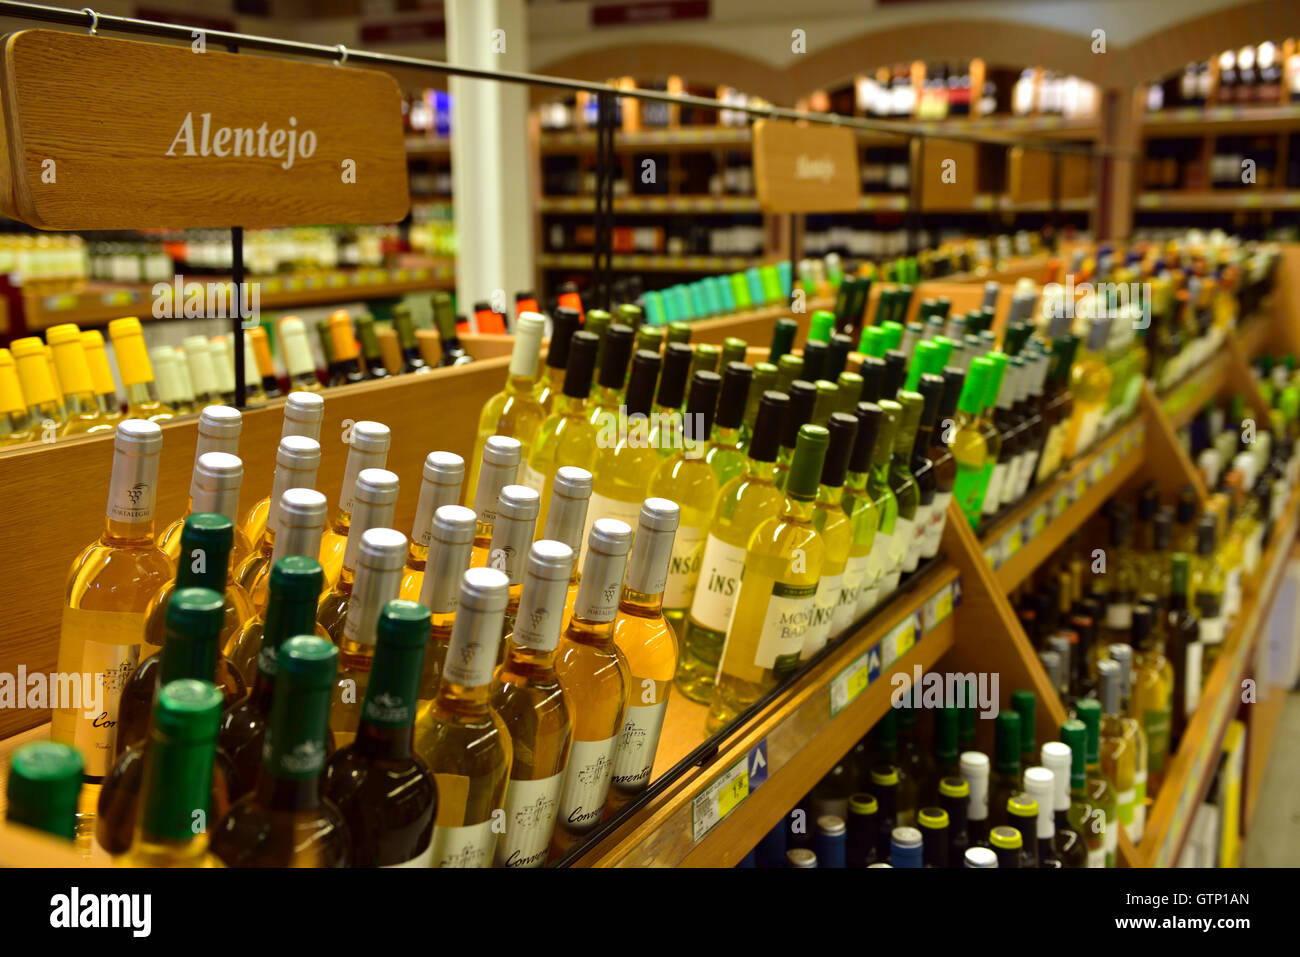 Bottles of wine on shelves in store Stock Photo